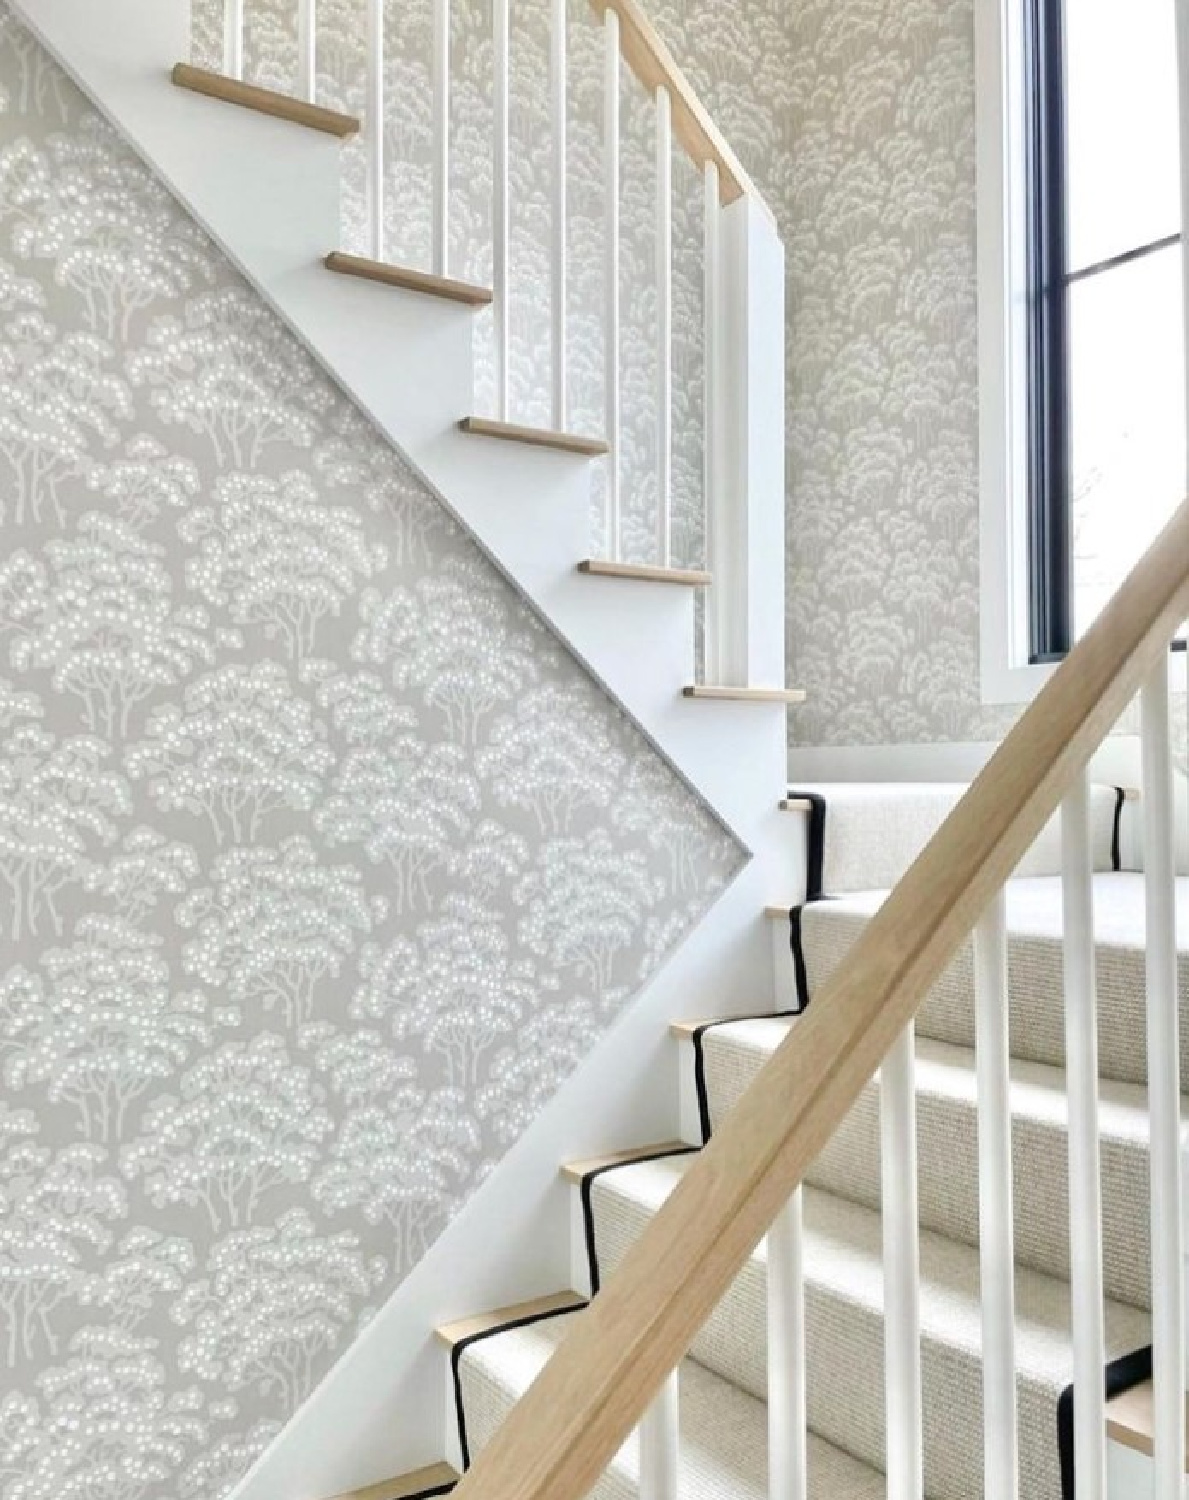 @celuiddesign - Farrow & Ball Hornbeam wallpaper in a stairway. #farrowandballwallpaper